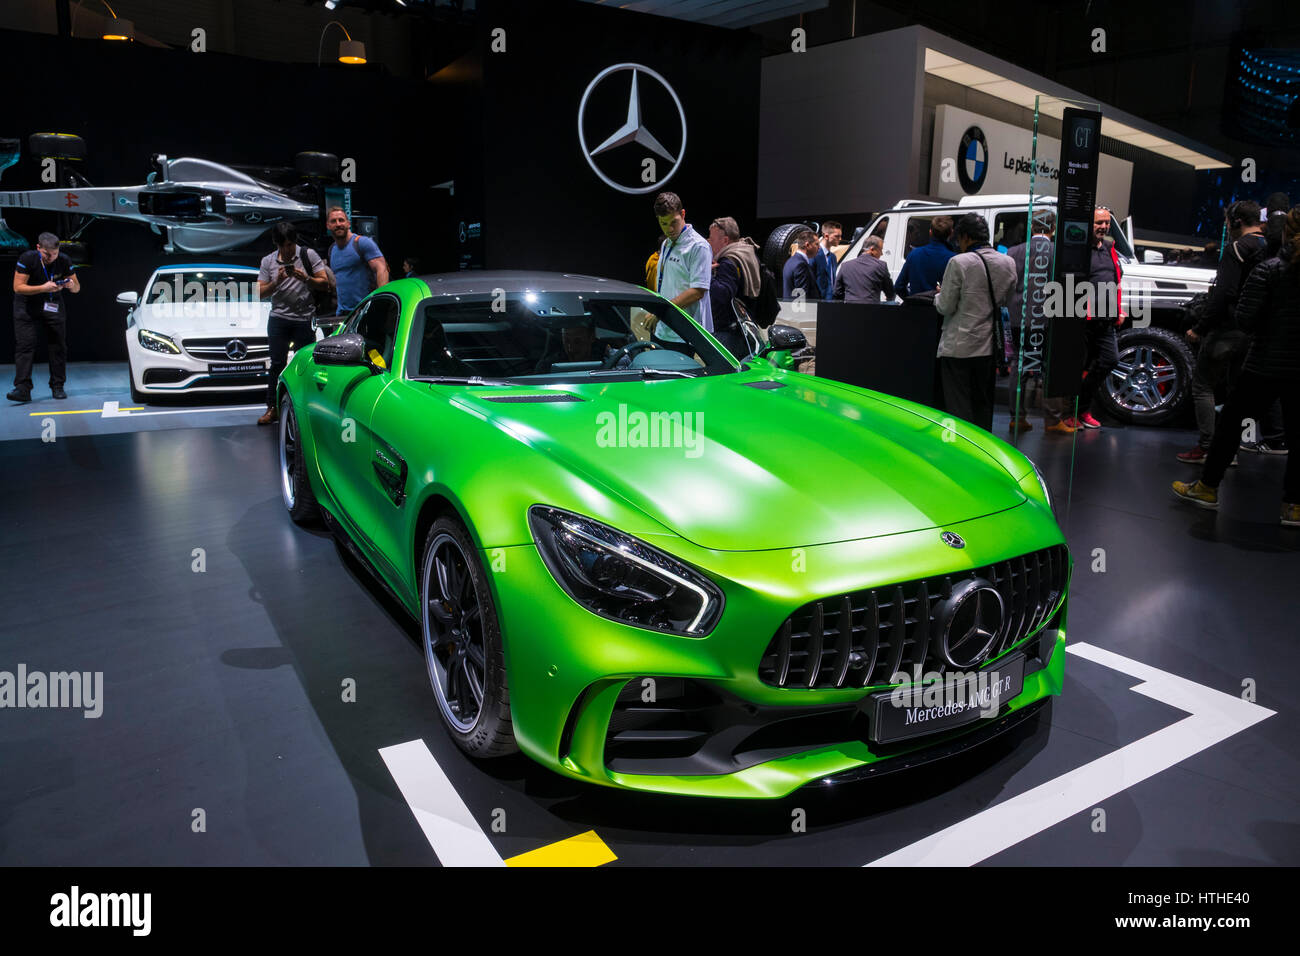 Mercedes AMG GT R au Salon International de l'Automobile à Genève Suisse 2017 Banque D'Images